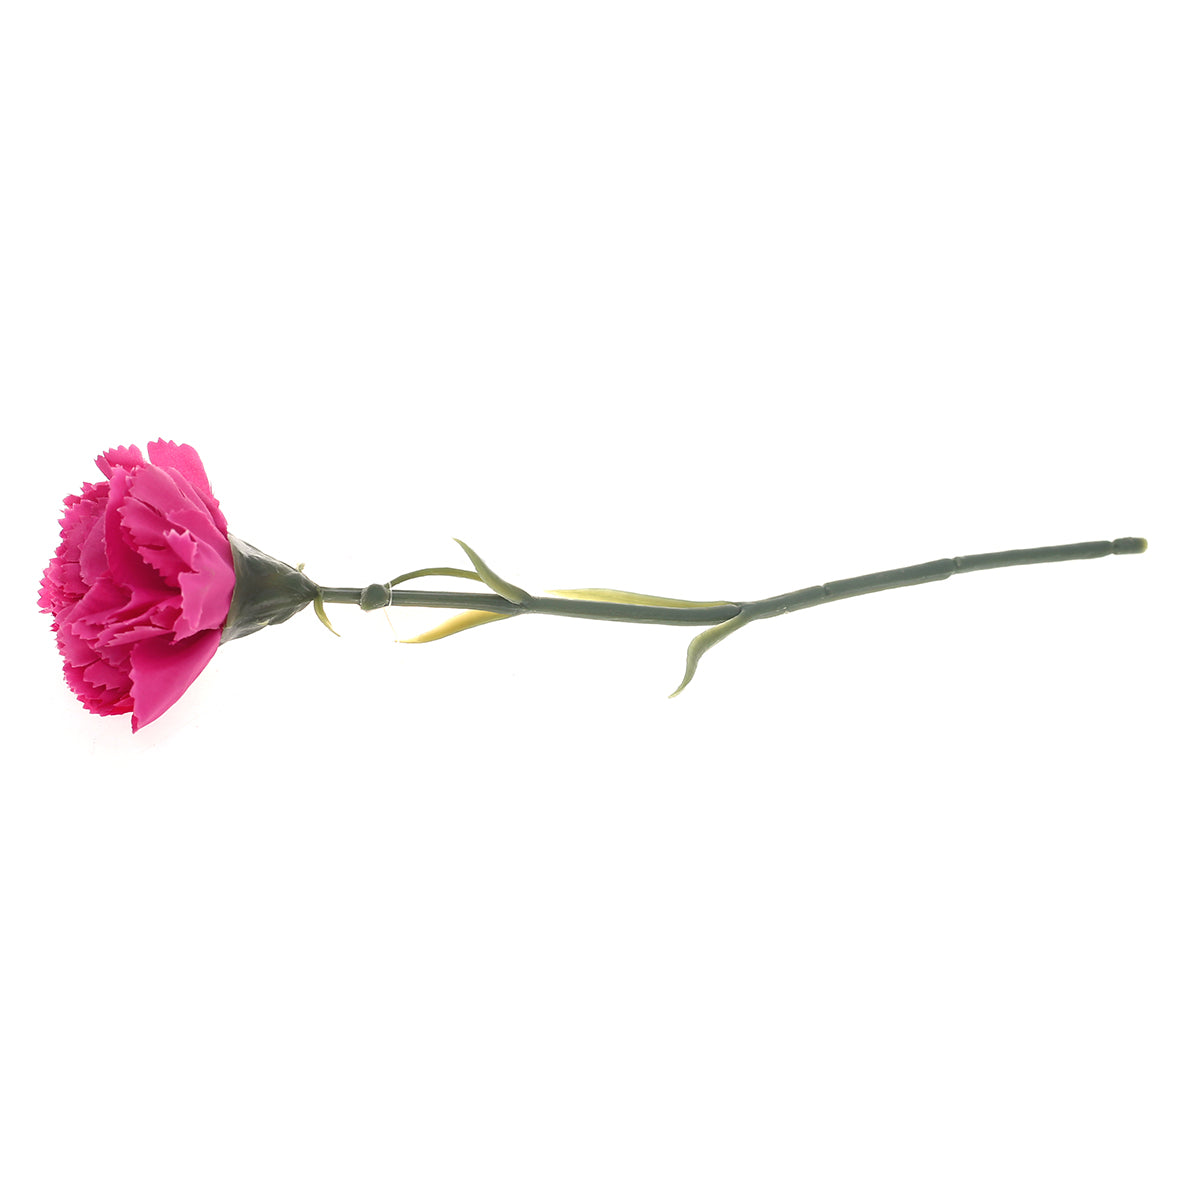 Carnation single flower.Unspecified...22174